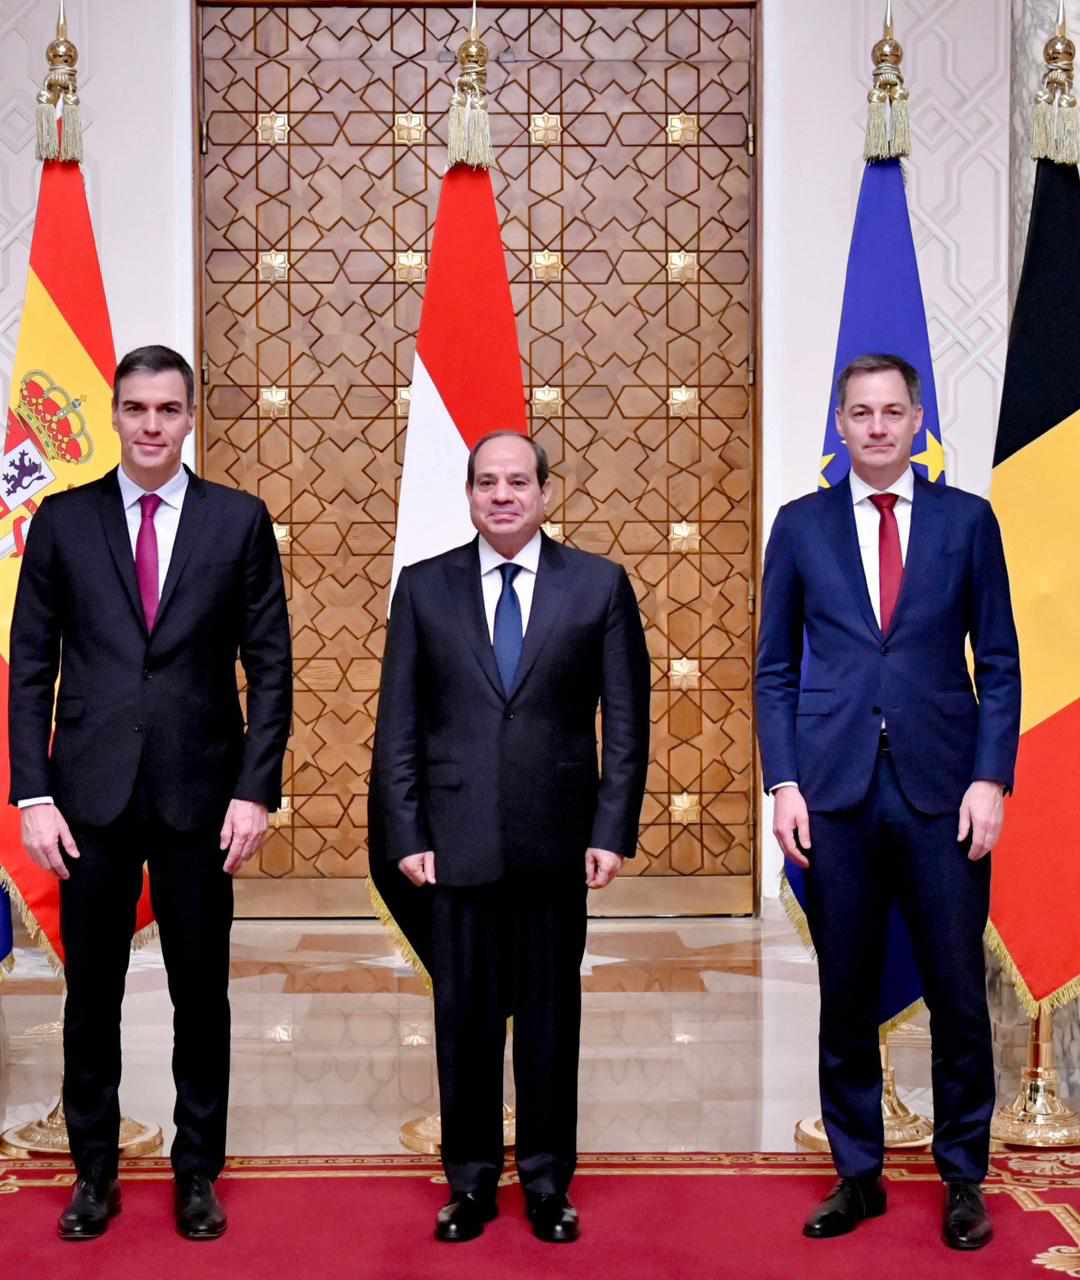 الرئيس يستقبل رئيسي وزراء إسبانيا وبلجيكا